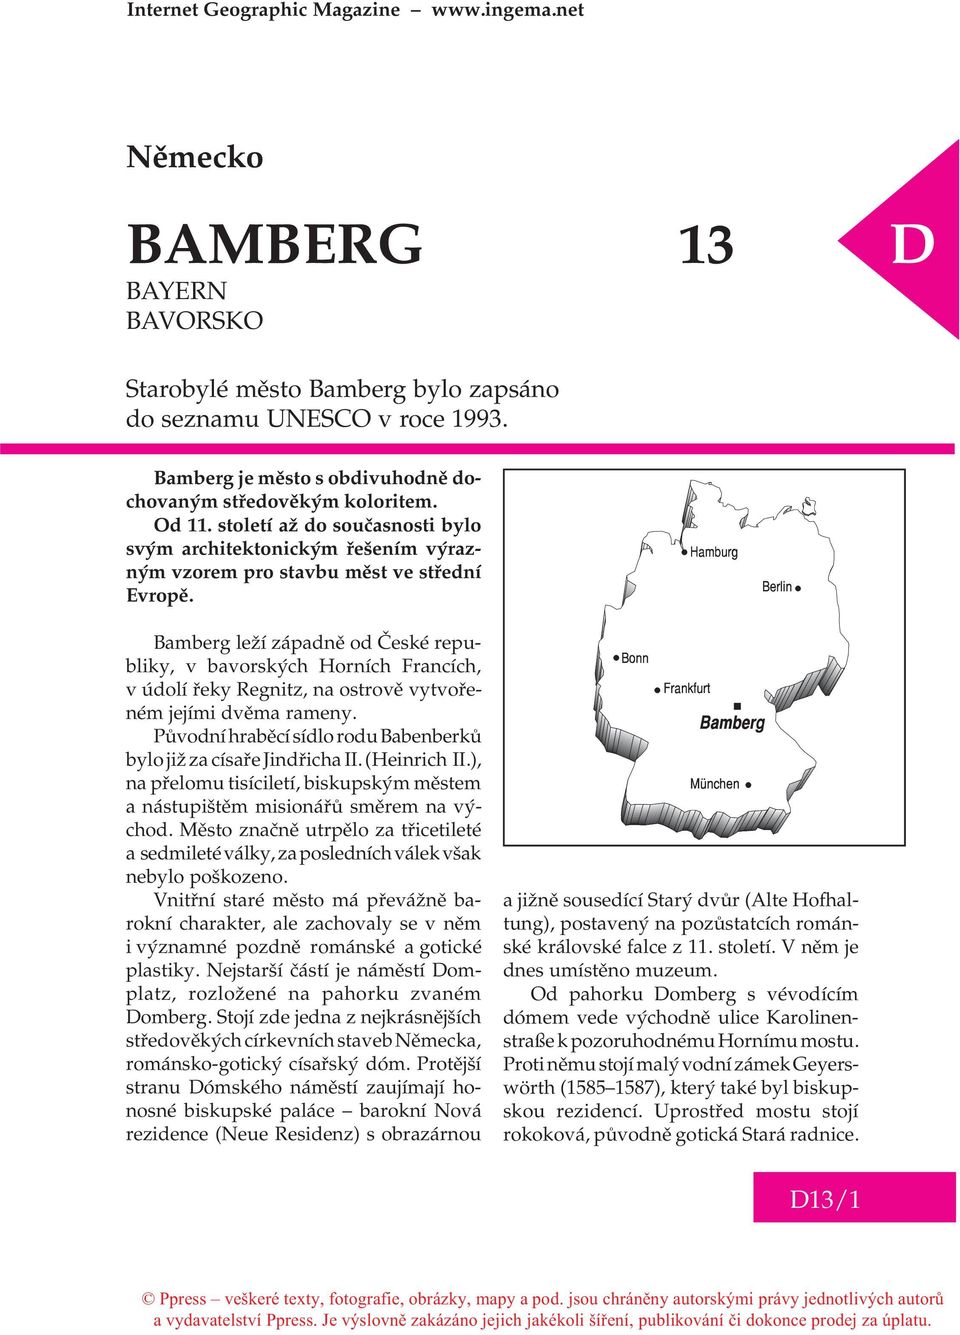 Bamberg leží západnì od Èeské republiky, v bavorských Horních Francích, v údolí øeky Regnitz, na ostrovì vytvoøeném jejími dvìma rameny.